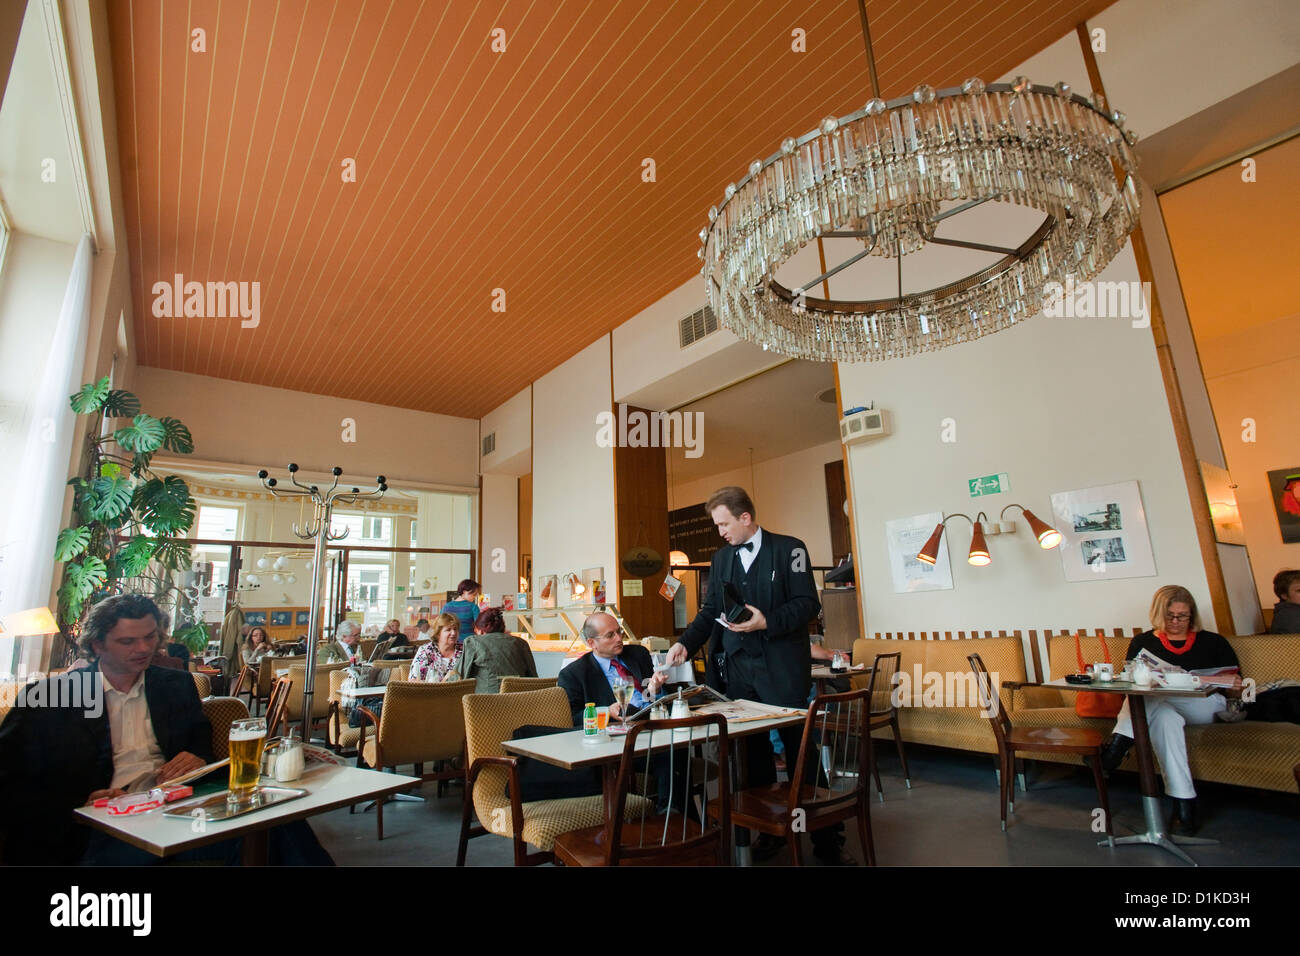 Österreich, Wien 1, Stubentor, das Wiener Kaffeehaus Cafe Prückel existiert schon seit 100 Jahren. Stock Photo